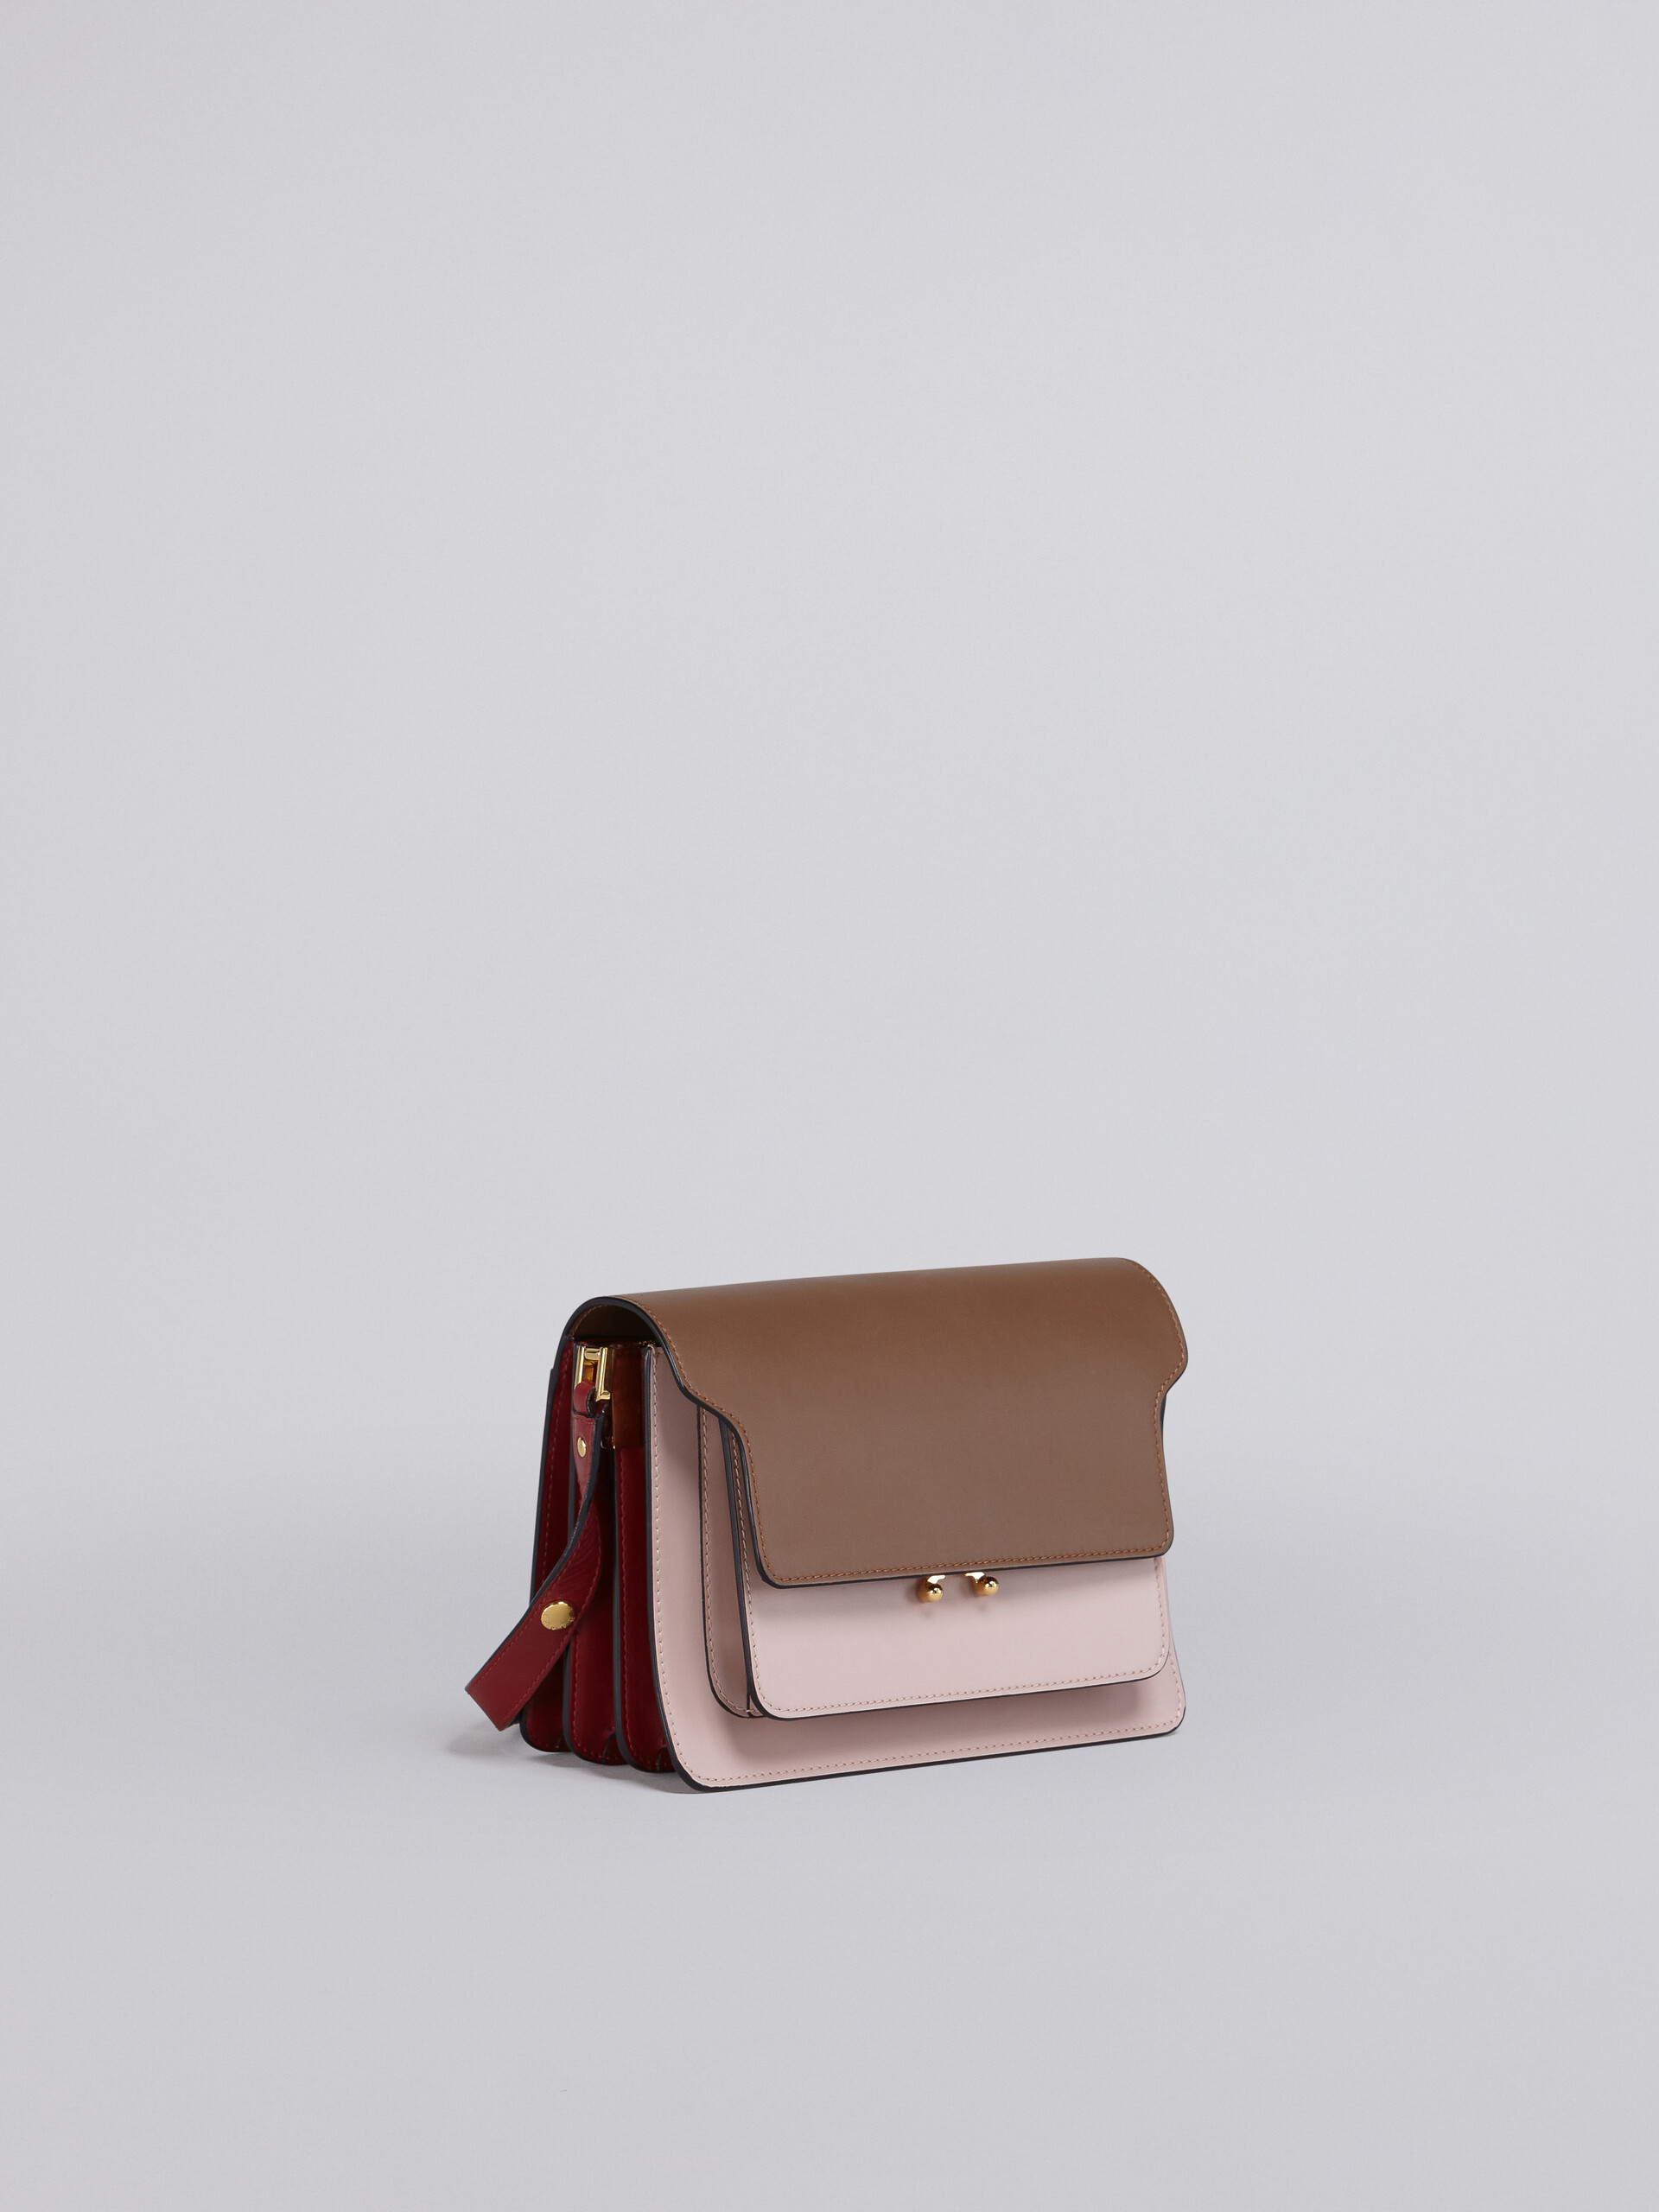 Bolso TRUNK de piel marrón rosa y roja - Bolsos de hombro - Image 5